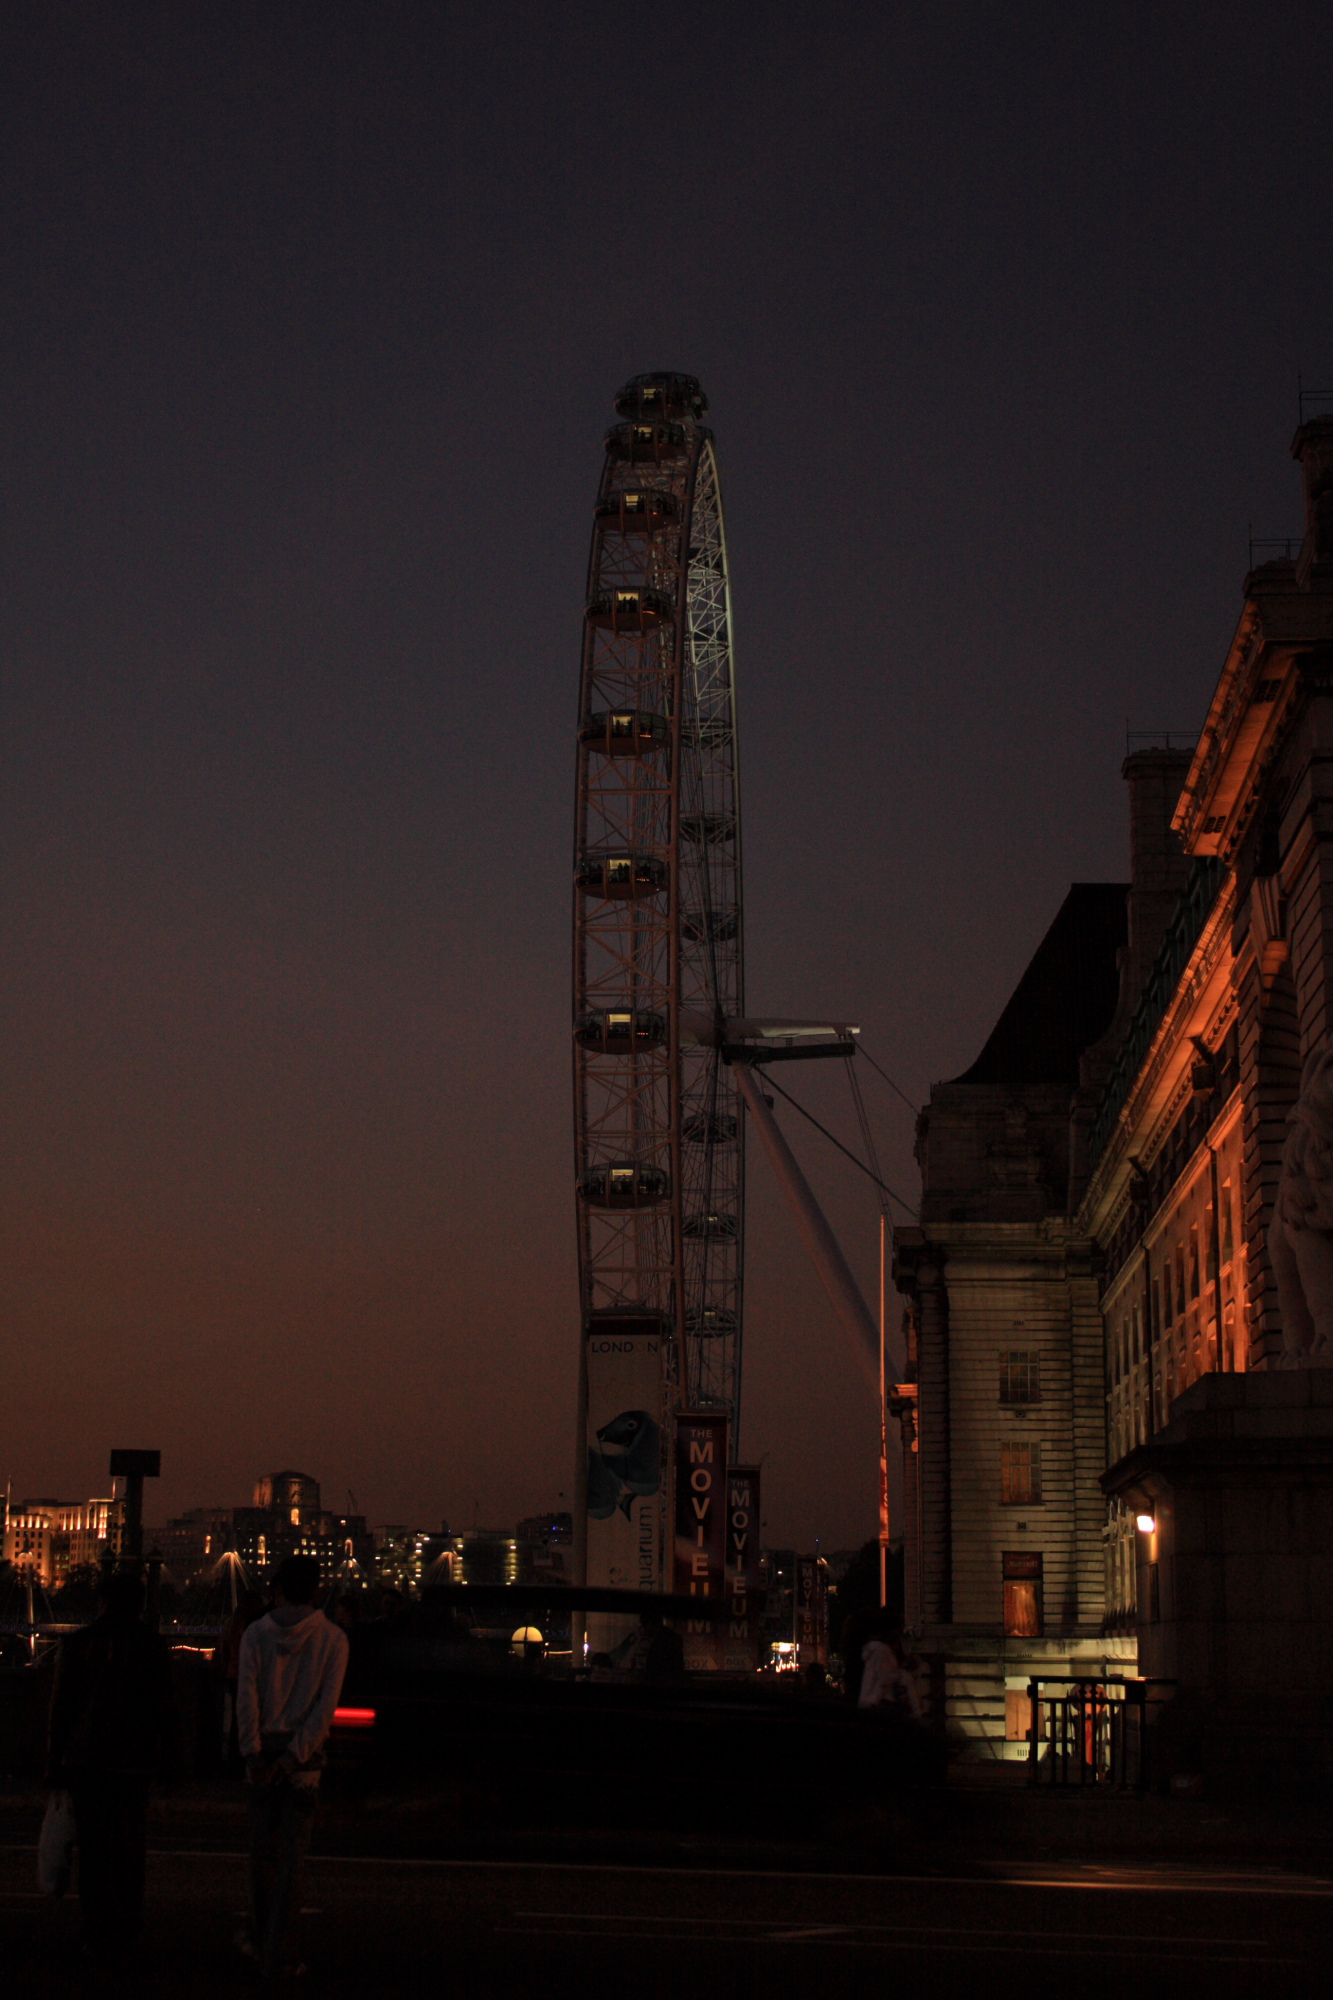 London Eye at dusk